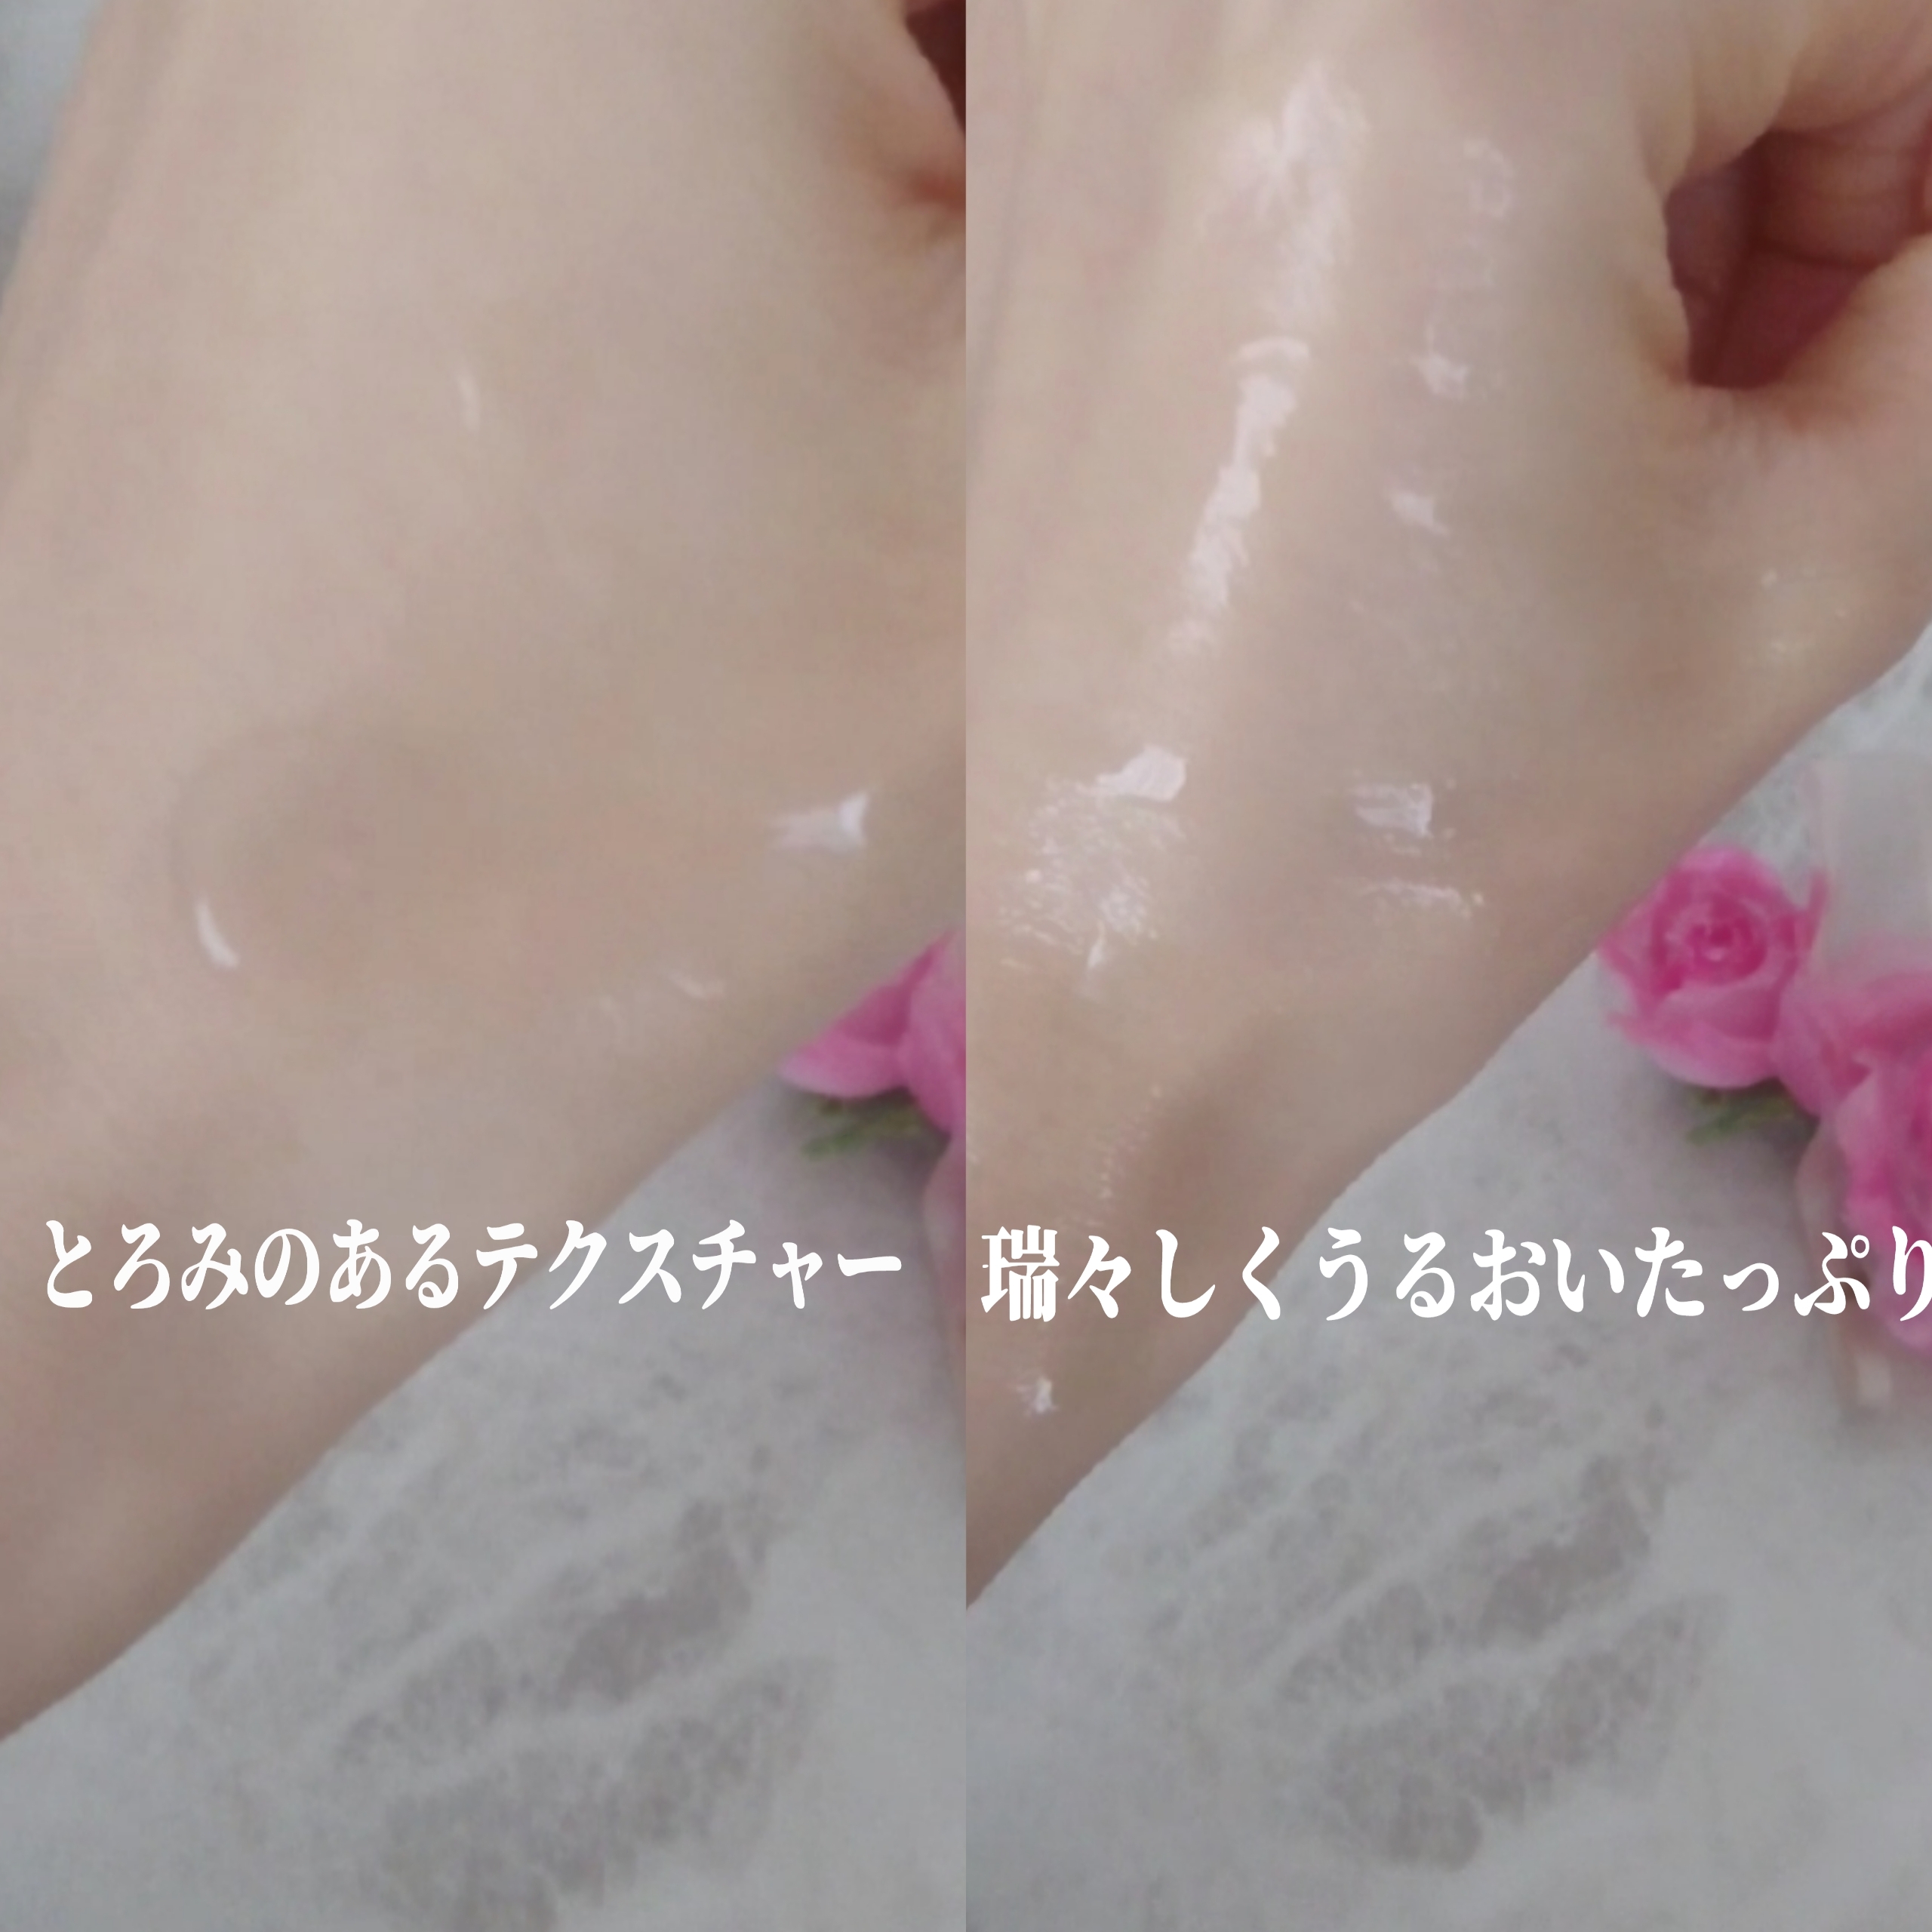 インデプスリジュブバイオセルロースマスクを使ったYuKaRi♡さんのクチコミ画像4